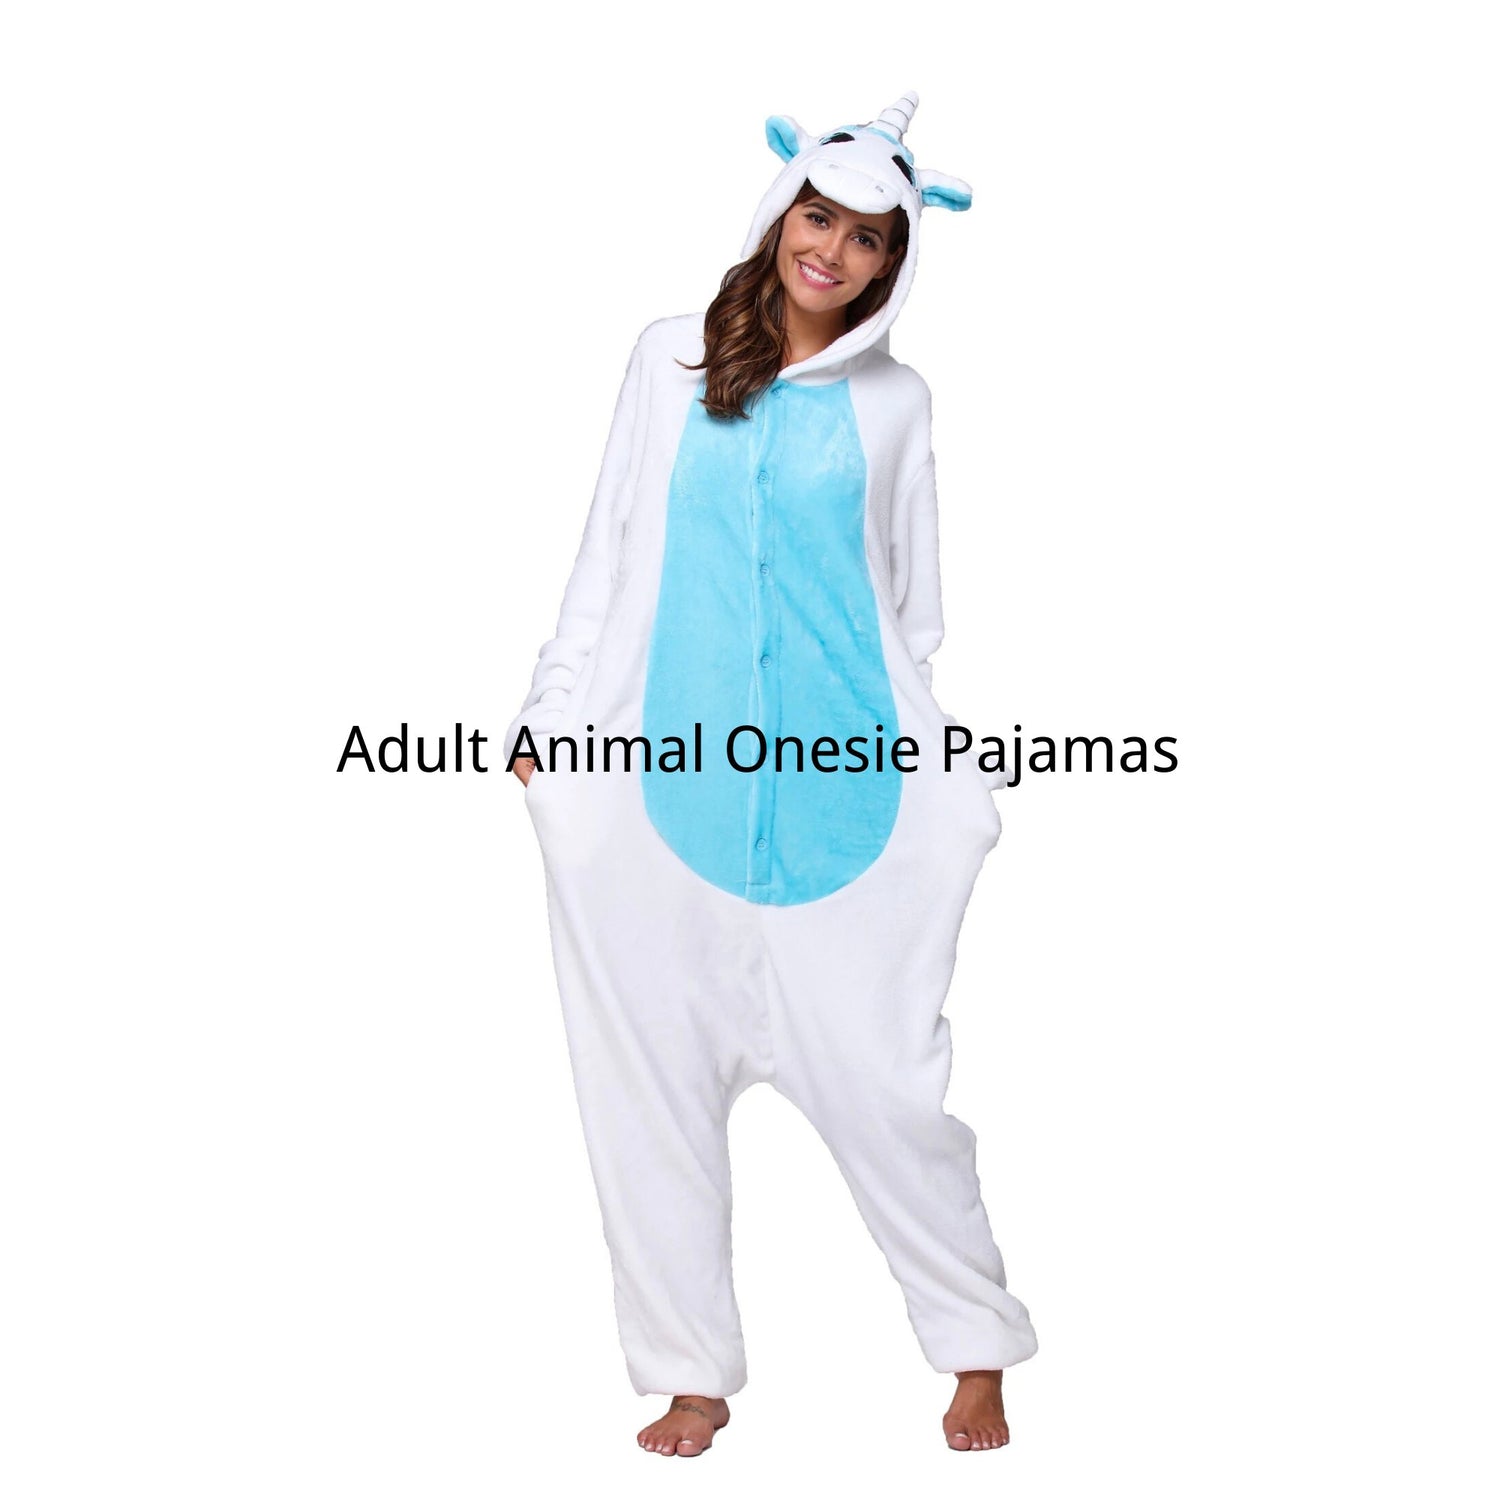 Adult Animal Onesie Pajamas